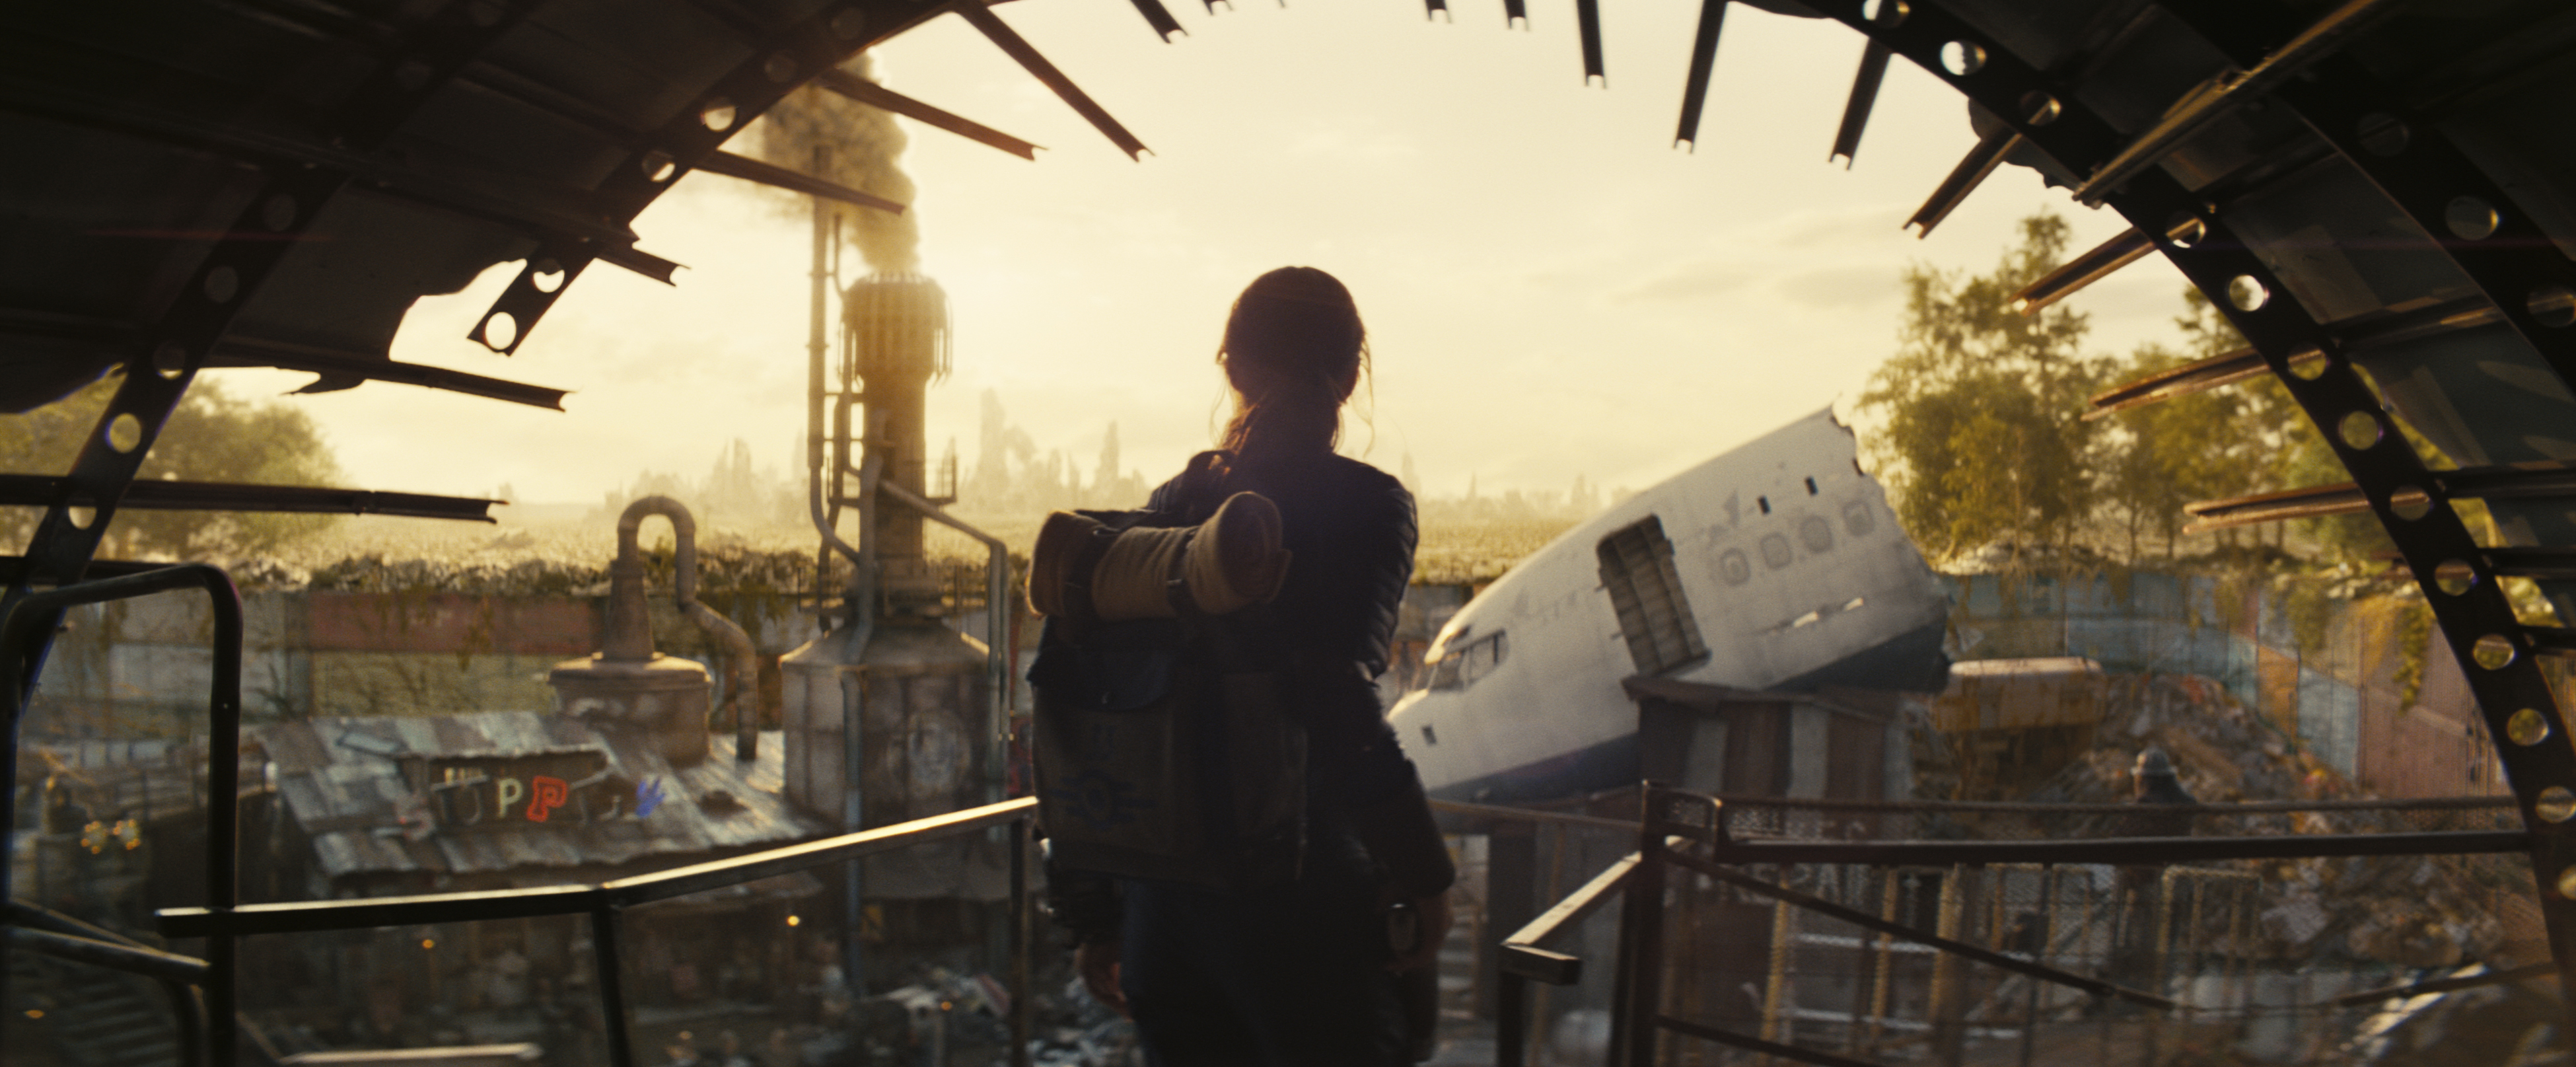 De Snelle Hap: eerste beelden Fallout-serie, YouTube AI en heel veel meer